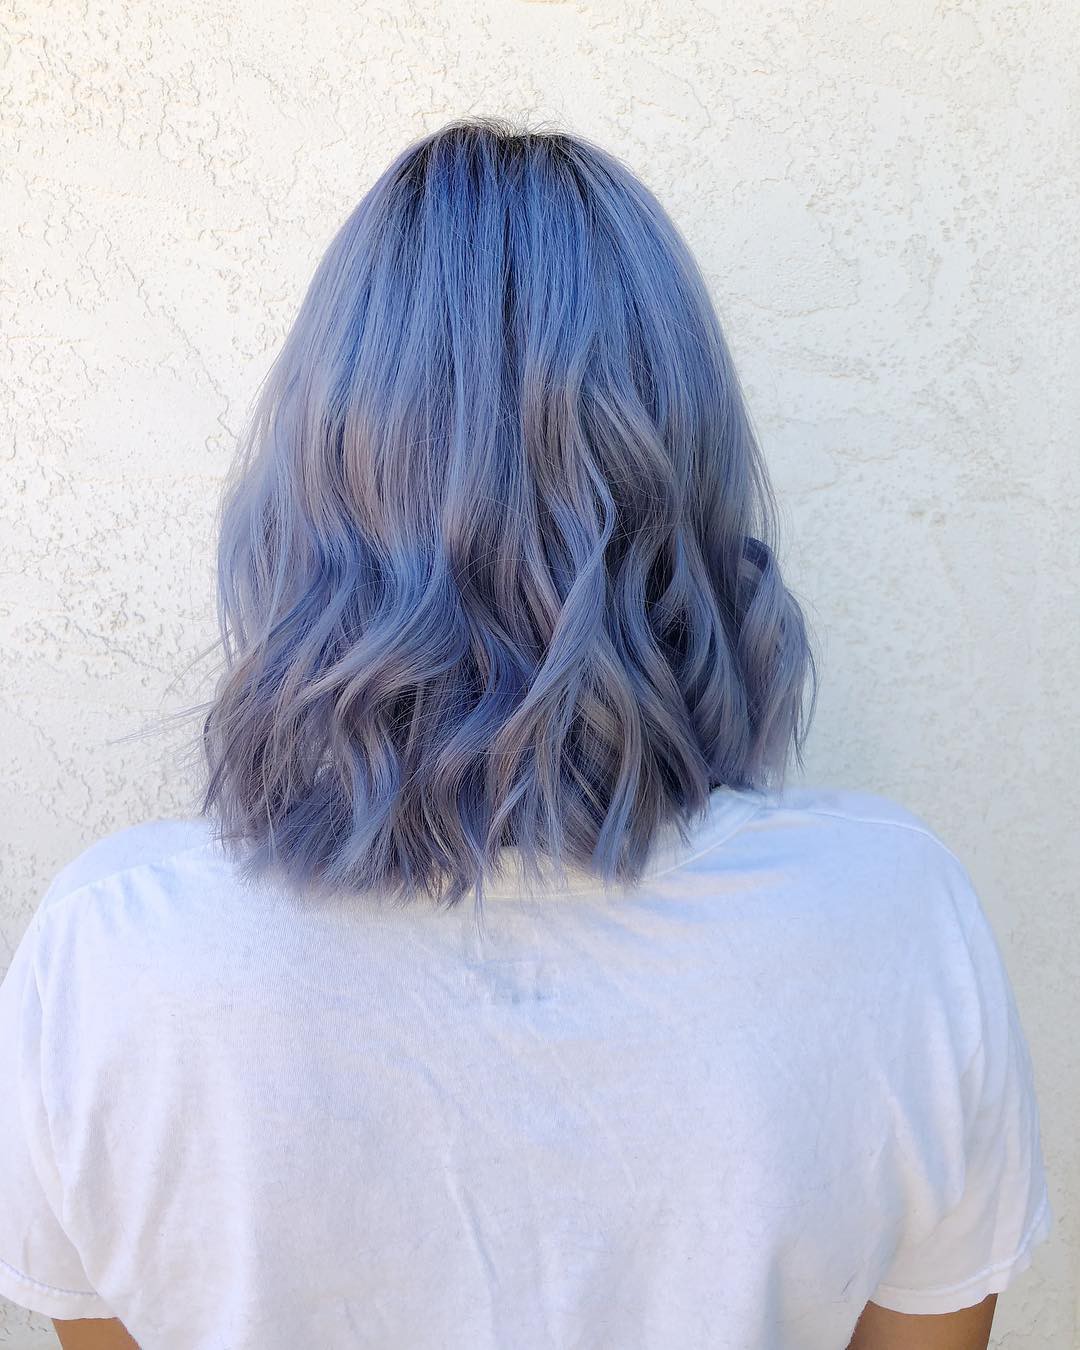 Tóc xanh dương tím - Chiếc tóc xanh dương tím như một cơn gió nhẹ len lỏi qua mái tóc nàng, tạo nên vẻ đẹp thời thượng và ấn tượng. Đừng bỏ lỡ cơ hội chiêm ngưỡng bức ảnh tuyệt đẹp này!